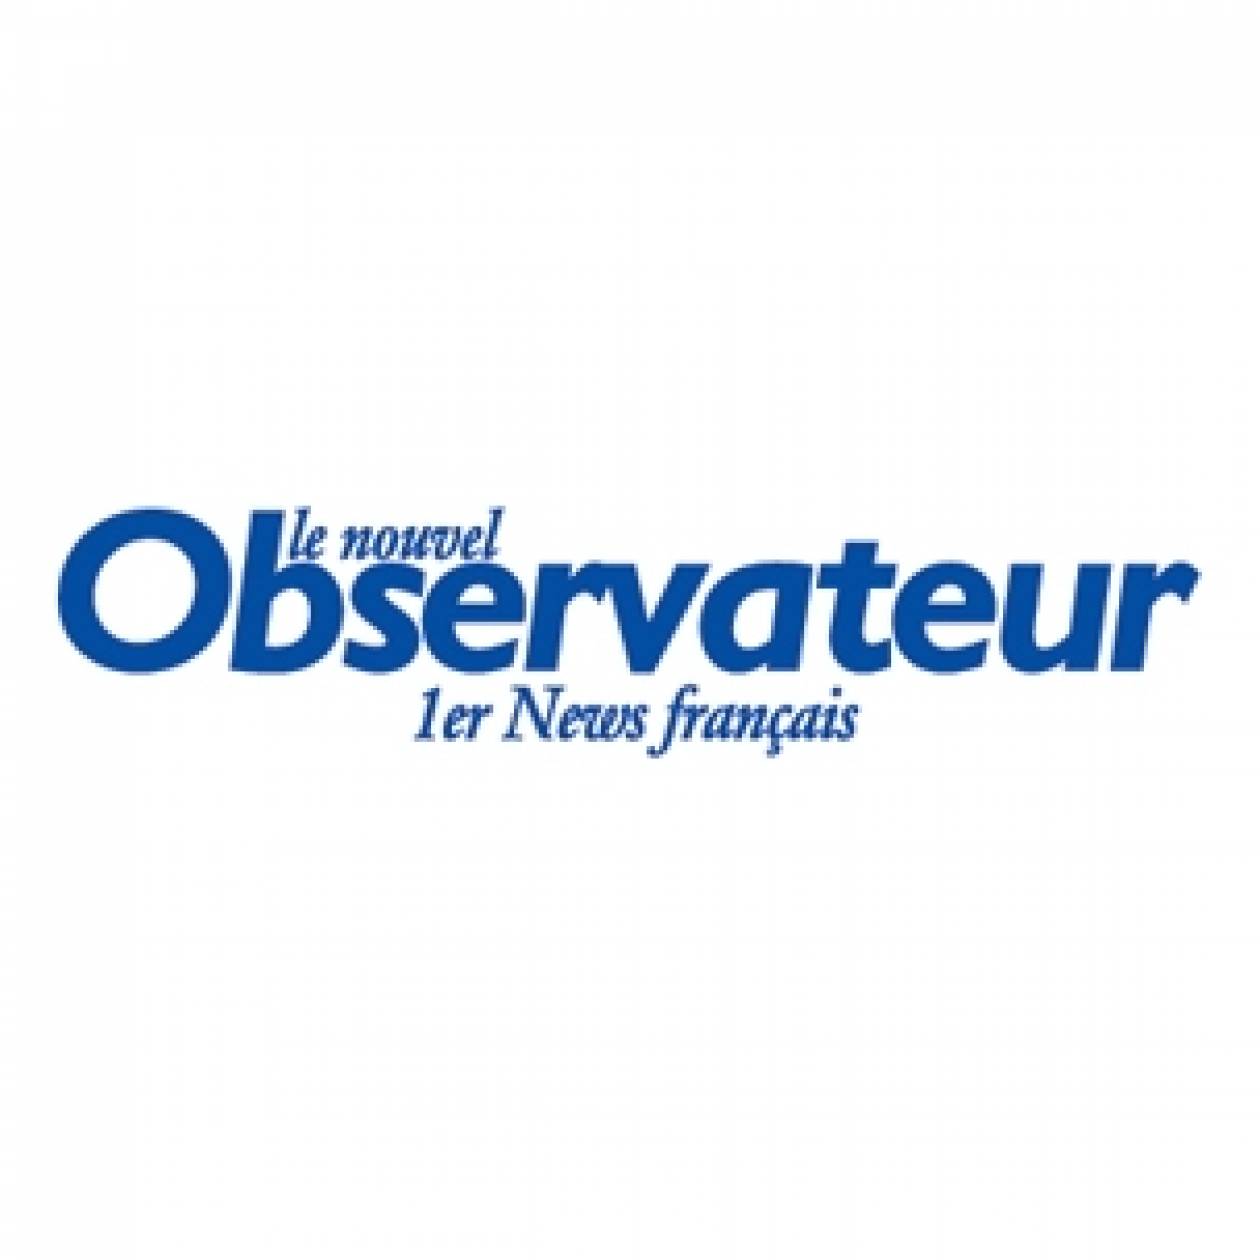 Γαλλία: Παραιτήθηκαν οι επικεφαλής του περιοδικού «Νουβέλ Ομπσερβατέρ»